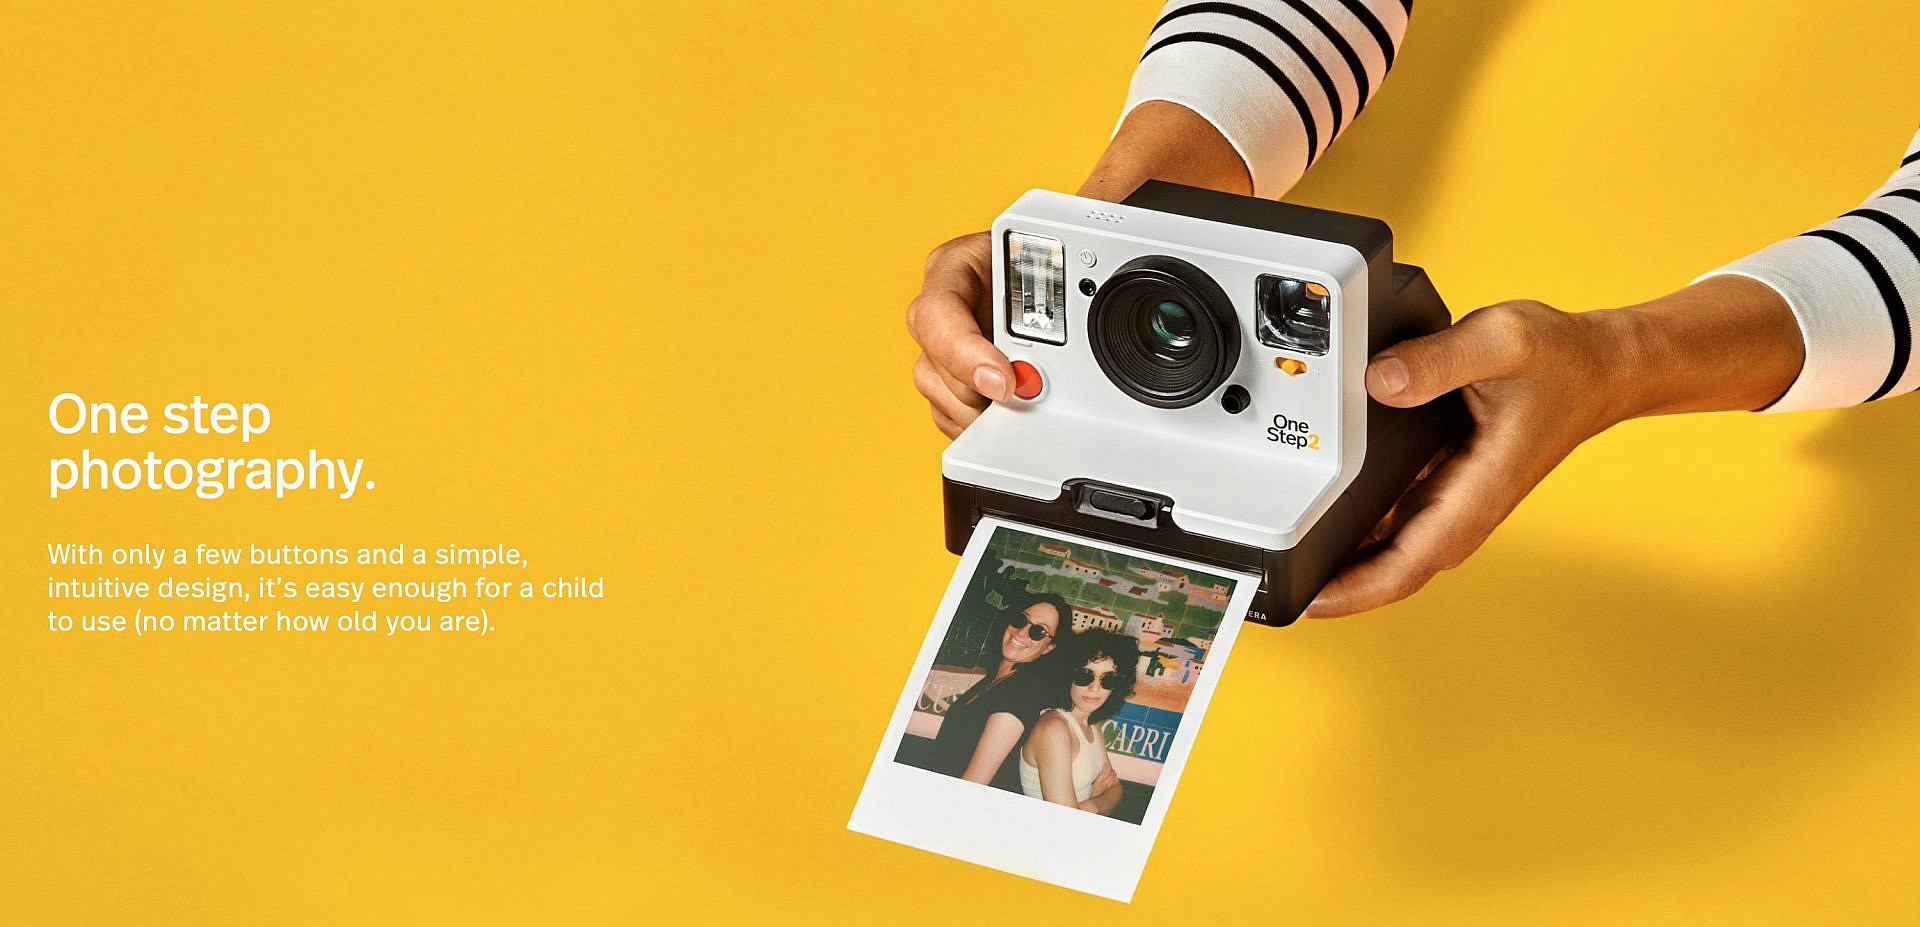 รอมา 12 ปี! Polaroid เปิดตัว OneStep 2 กล้องฟิล์ม Instant ตัวใหม่